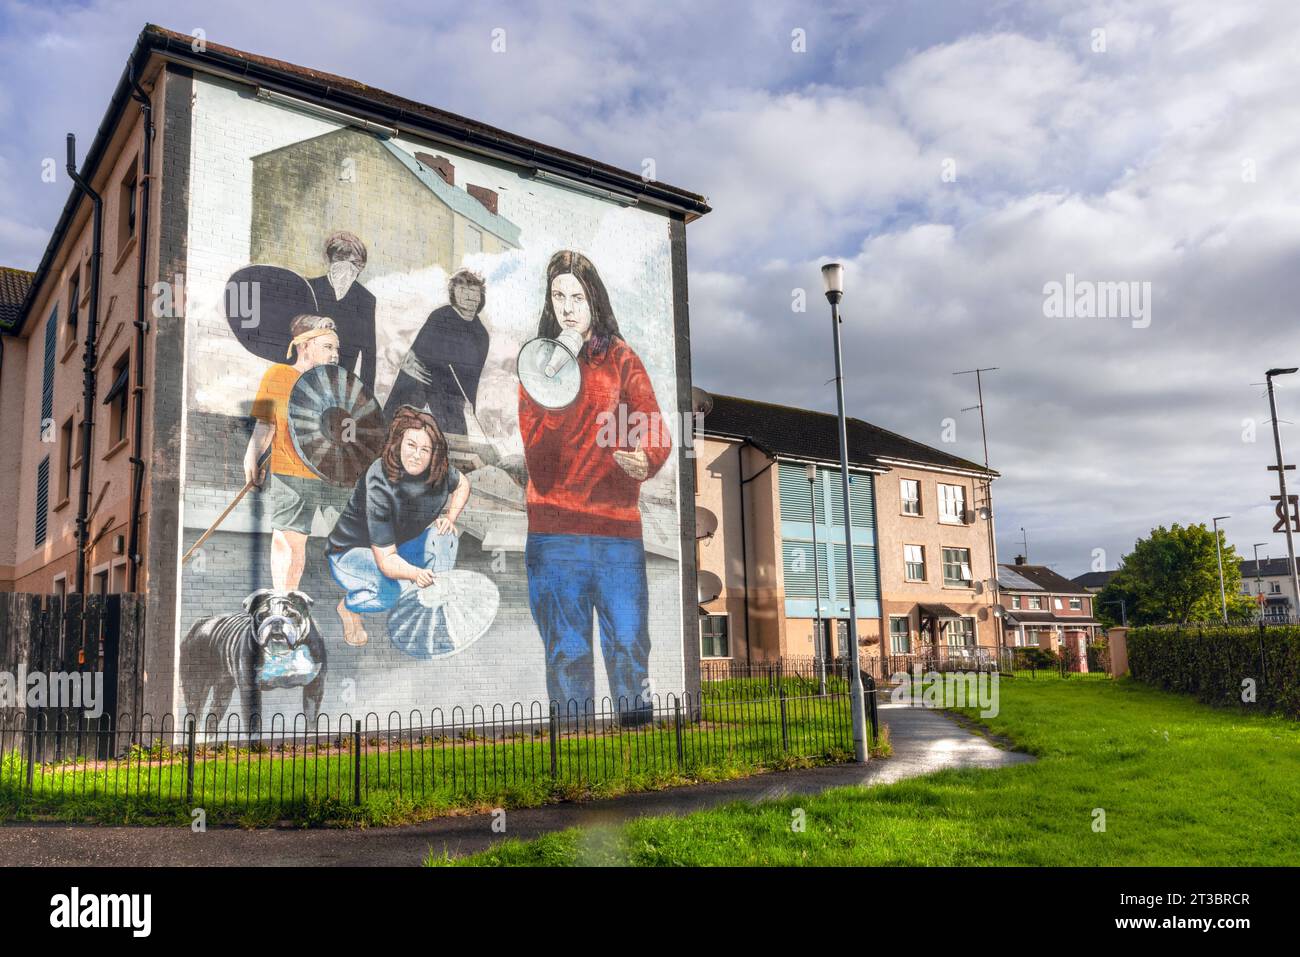 Die Wandmalereien von Derry, Nordirland, sind eine einzigartige und mächtige Form öffentlicher Kunst, die die Geschichte der schwierigen Vergangenheit der Stadt erzählt. Stockfoto